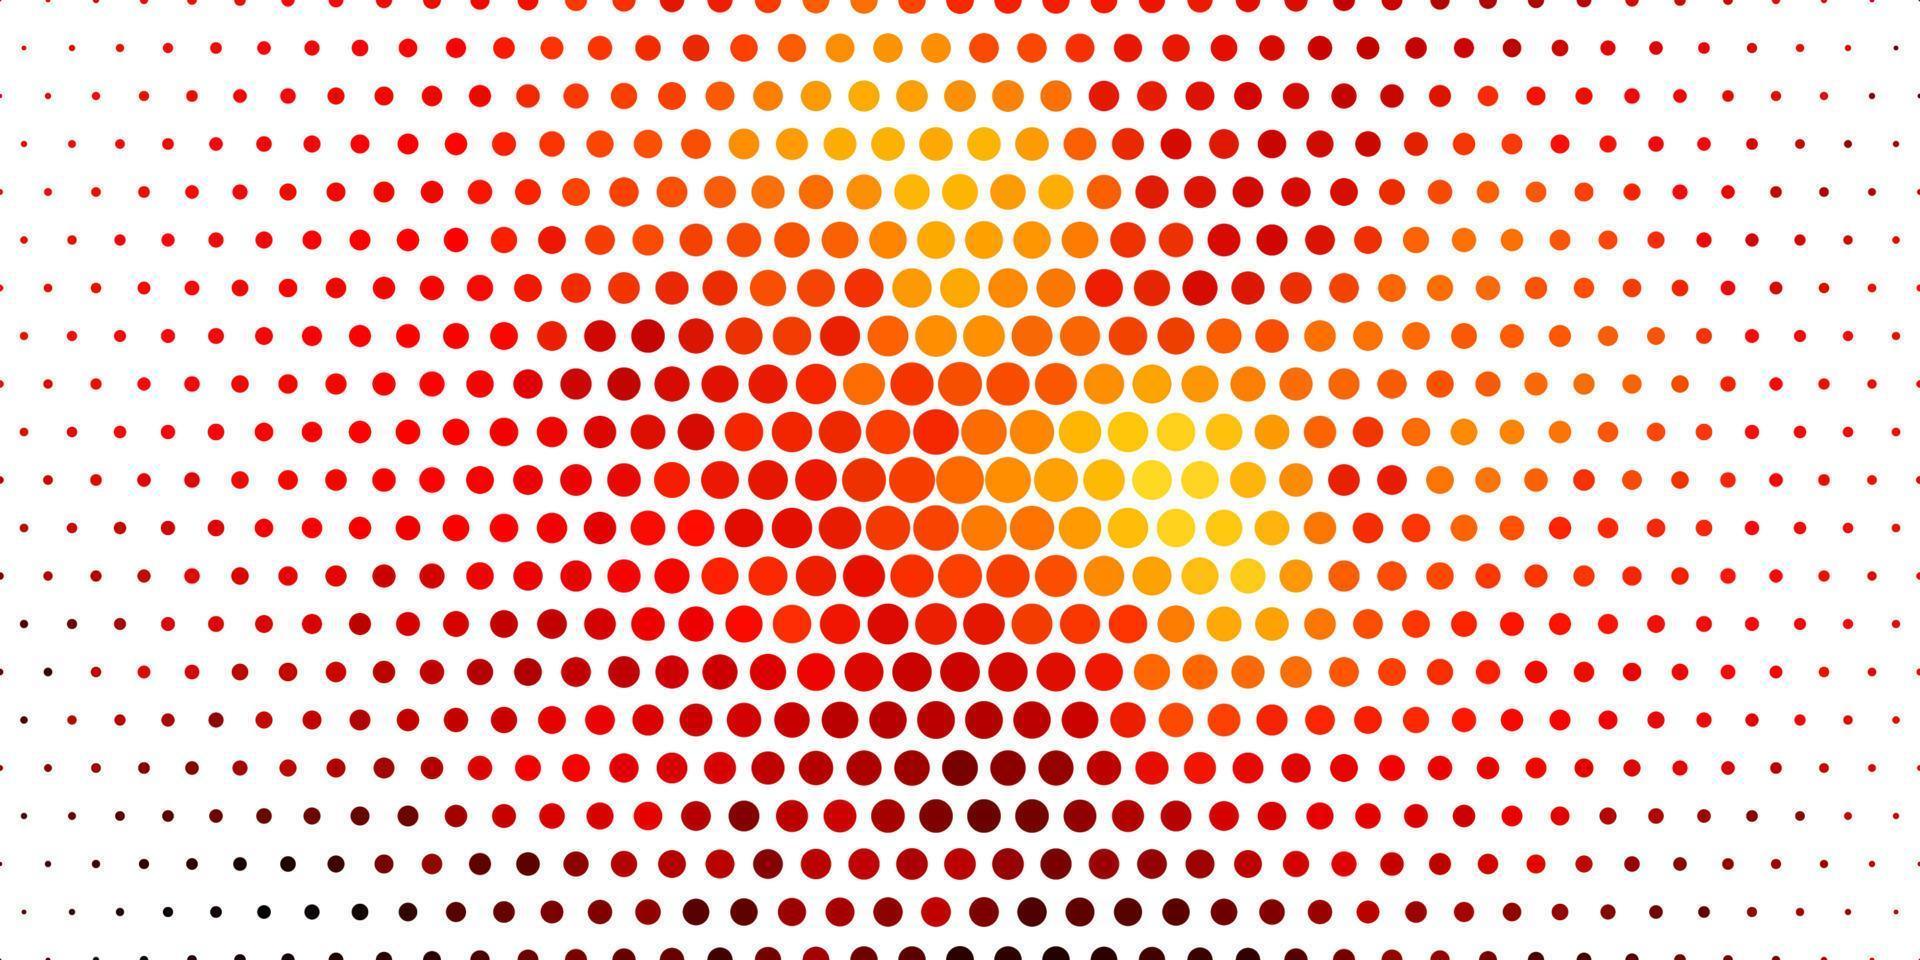 pano de fundo vector laranja claro com círculos.